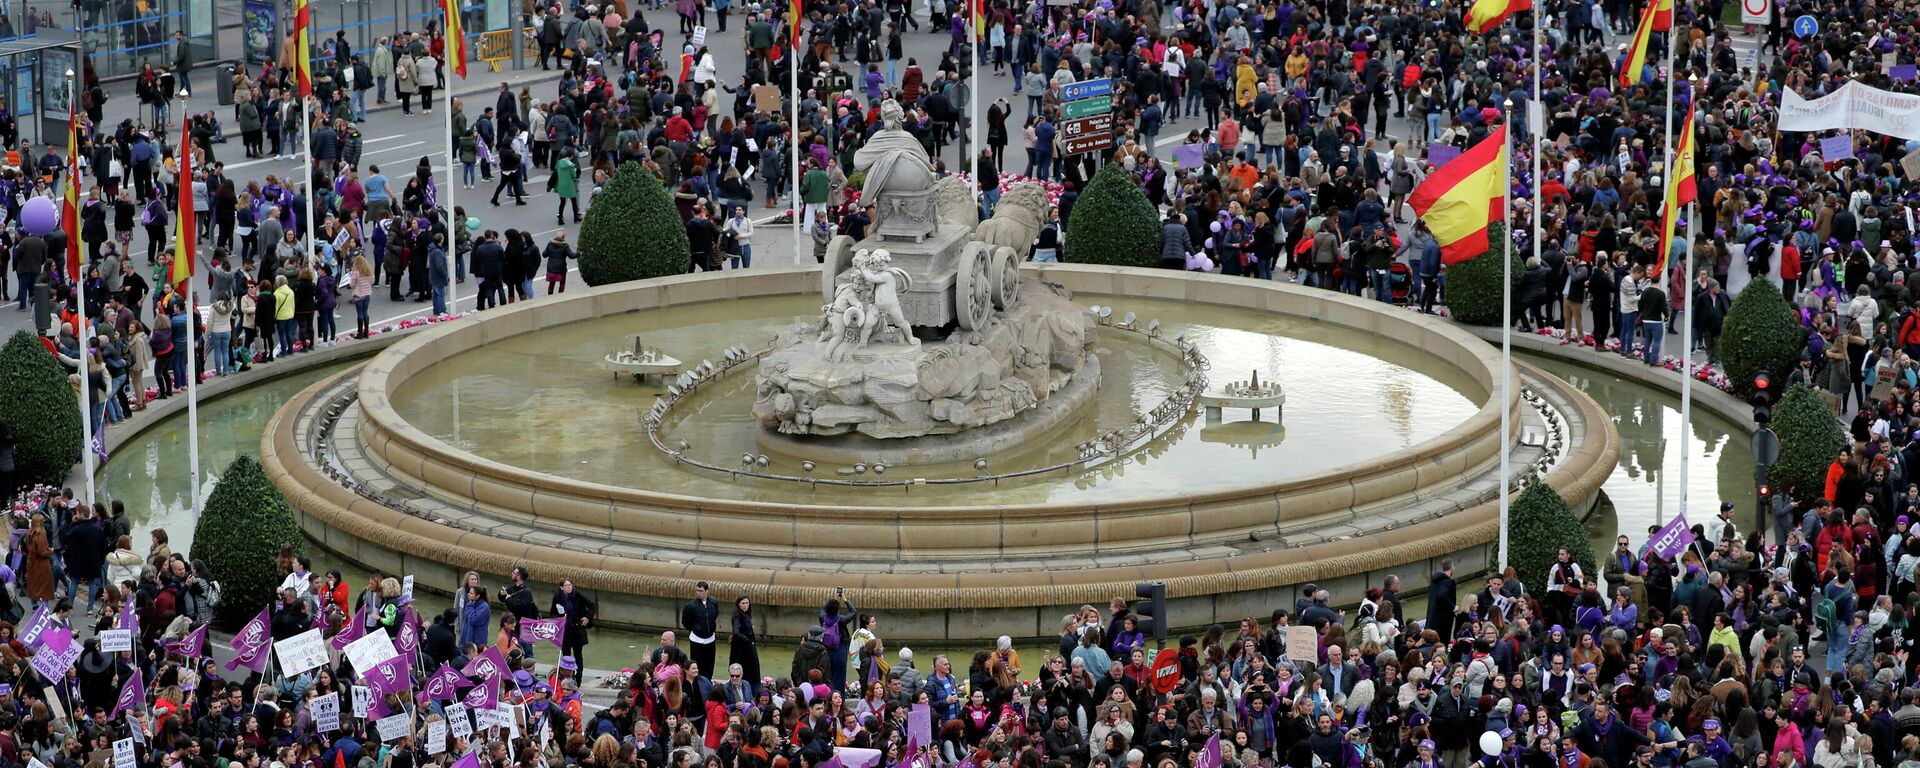 Una protesta con motivo del Día Internacional de la Mujer en Madrid, el 8 de marzo del 2020 (archivo) - Sputnik Mundo, 1920, 05.03.2021